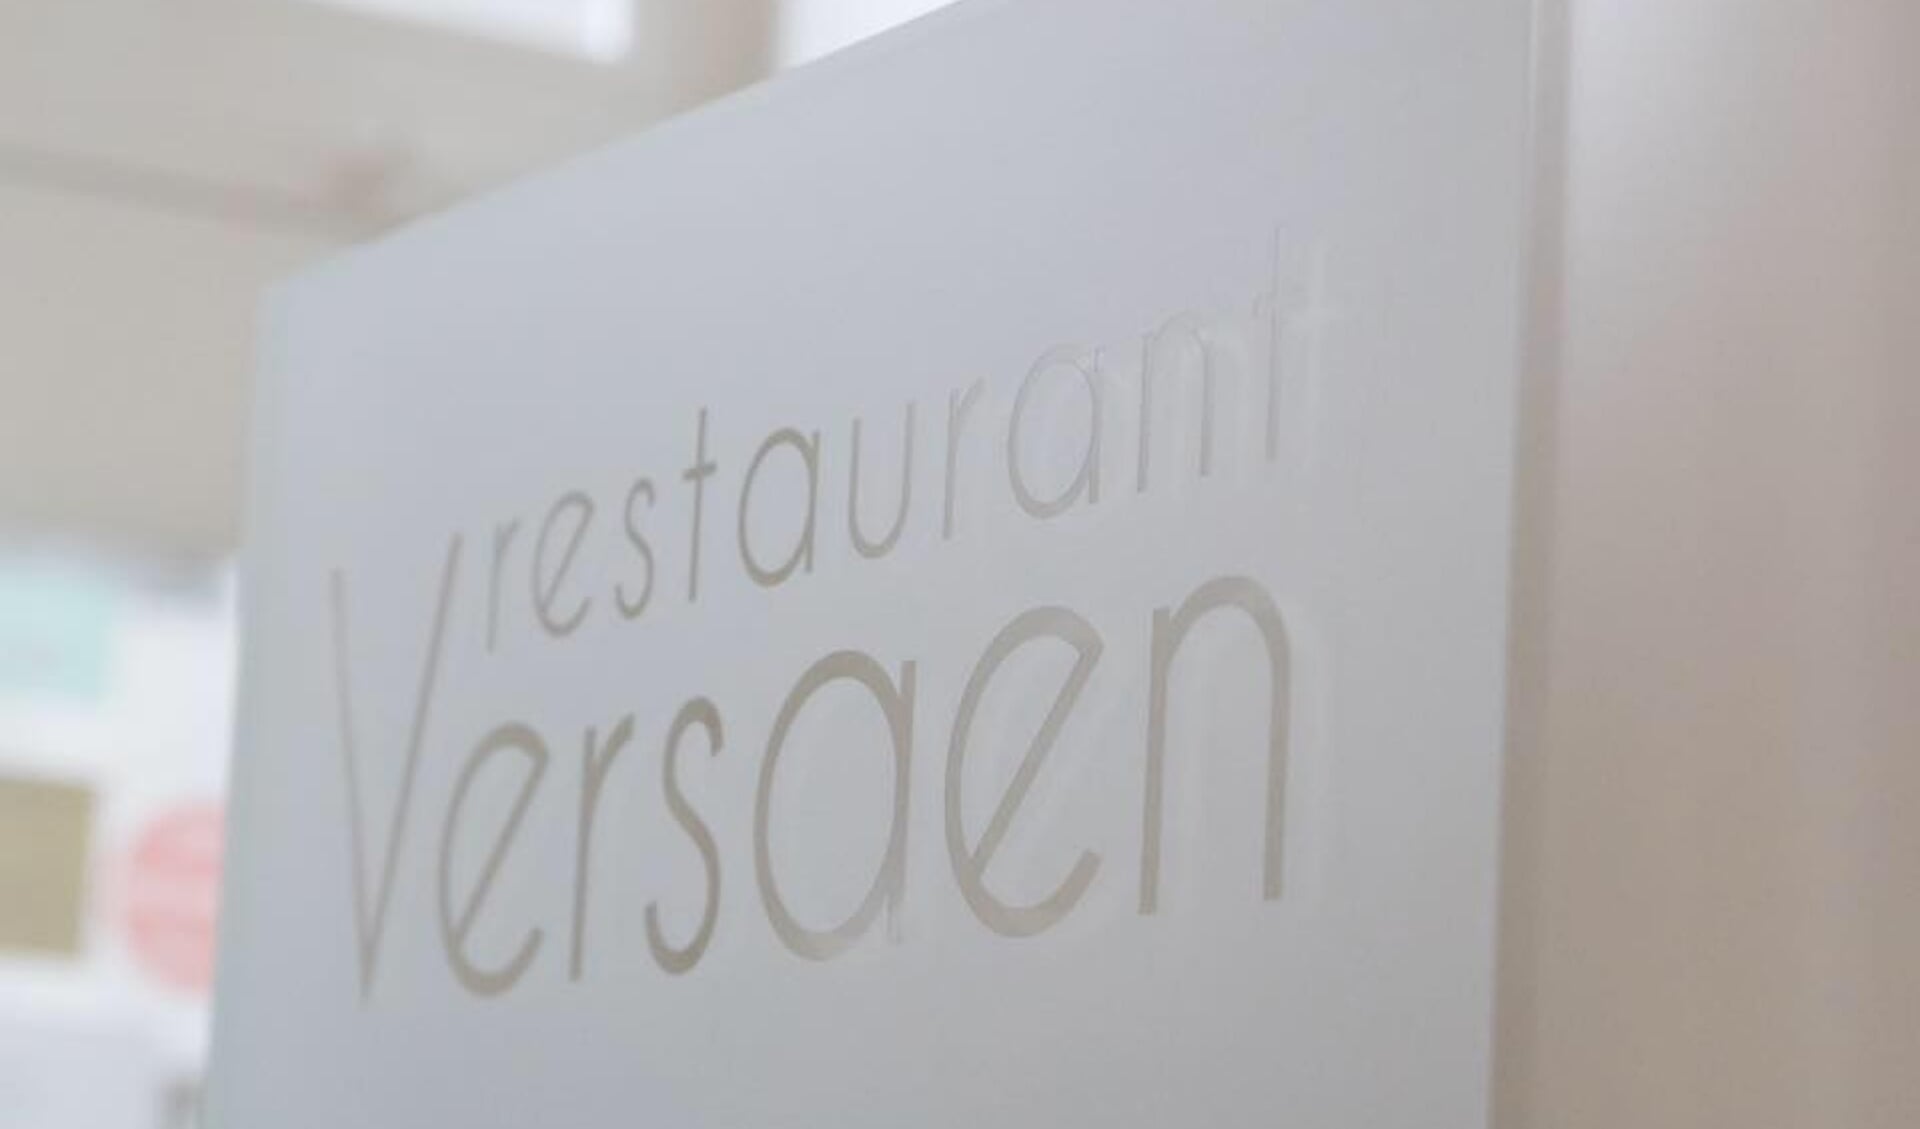 Restaurant Versaen in Ravenstein.